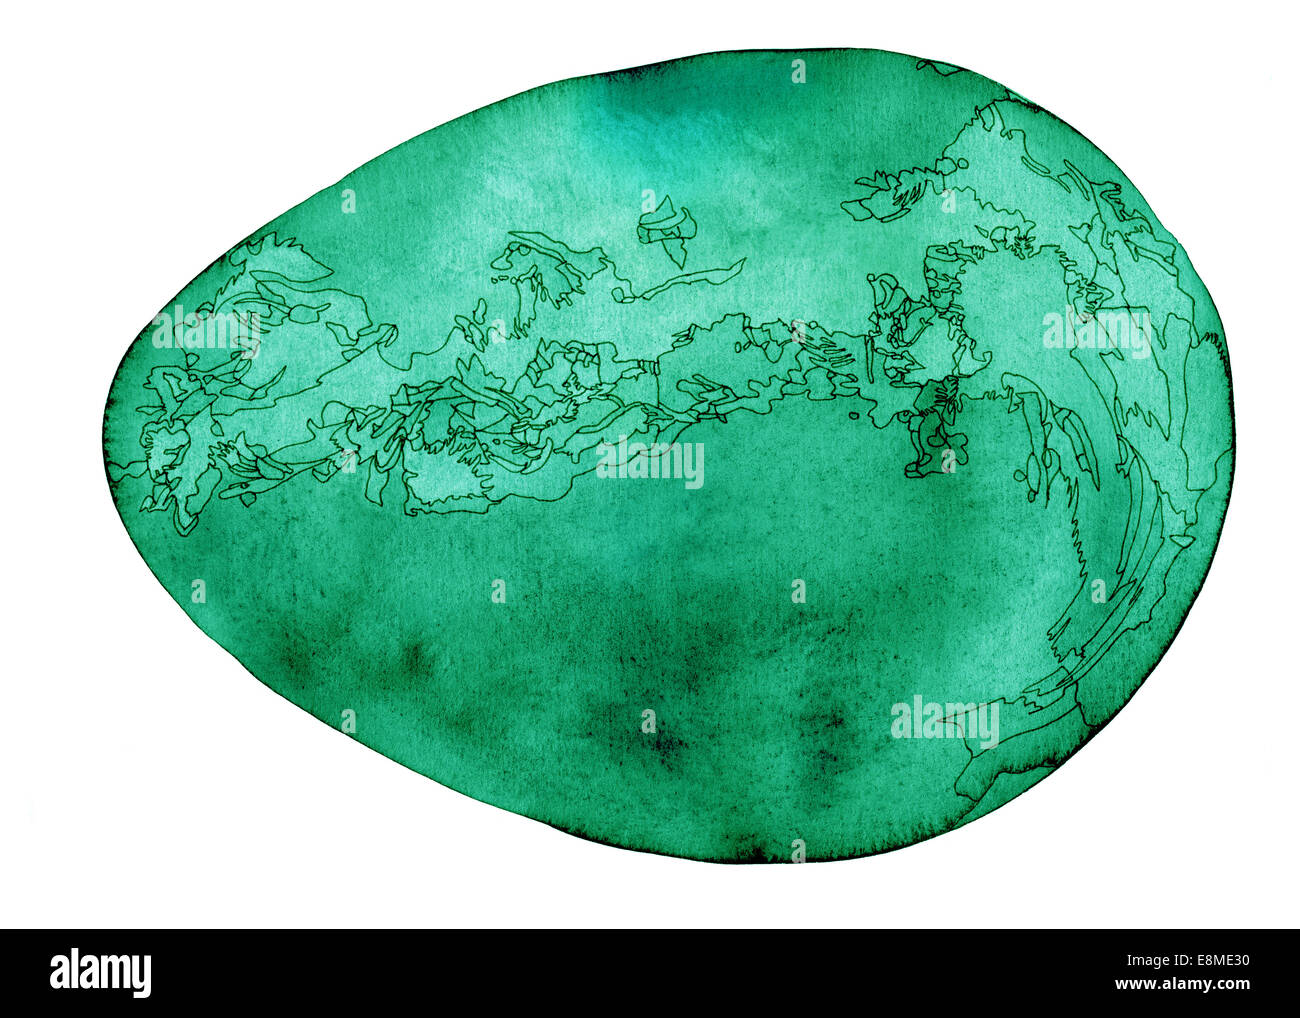 Kosmisches Ei, Smaragd grünen Aquarell Malerei mit feinen Konturen in schwarz, isoliert auf weiss Stockfoto